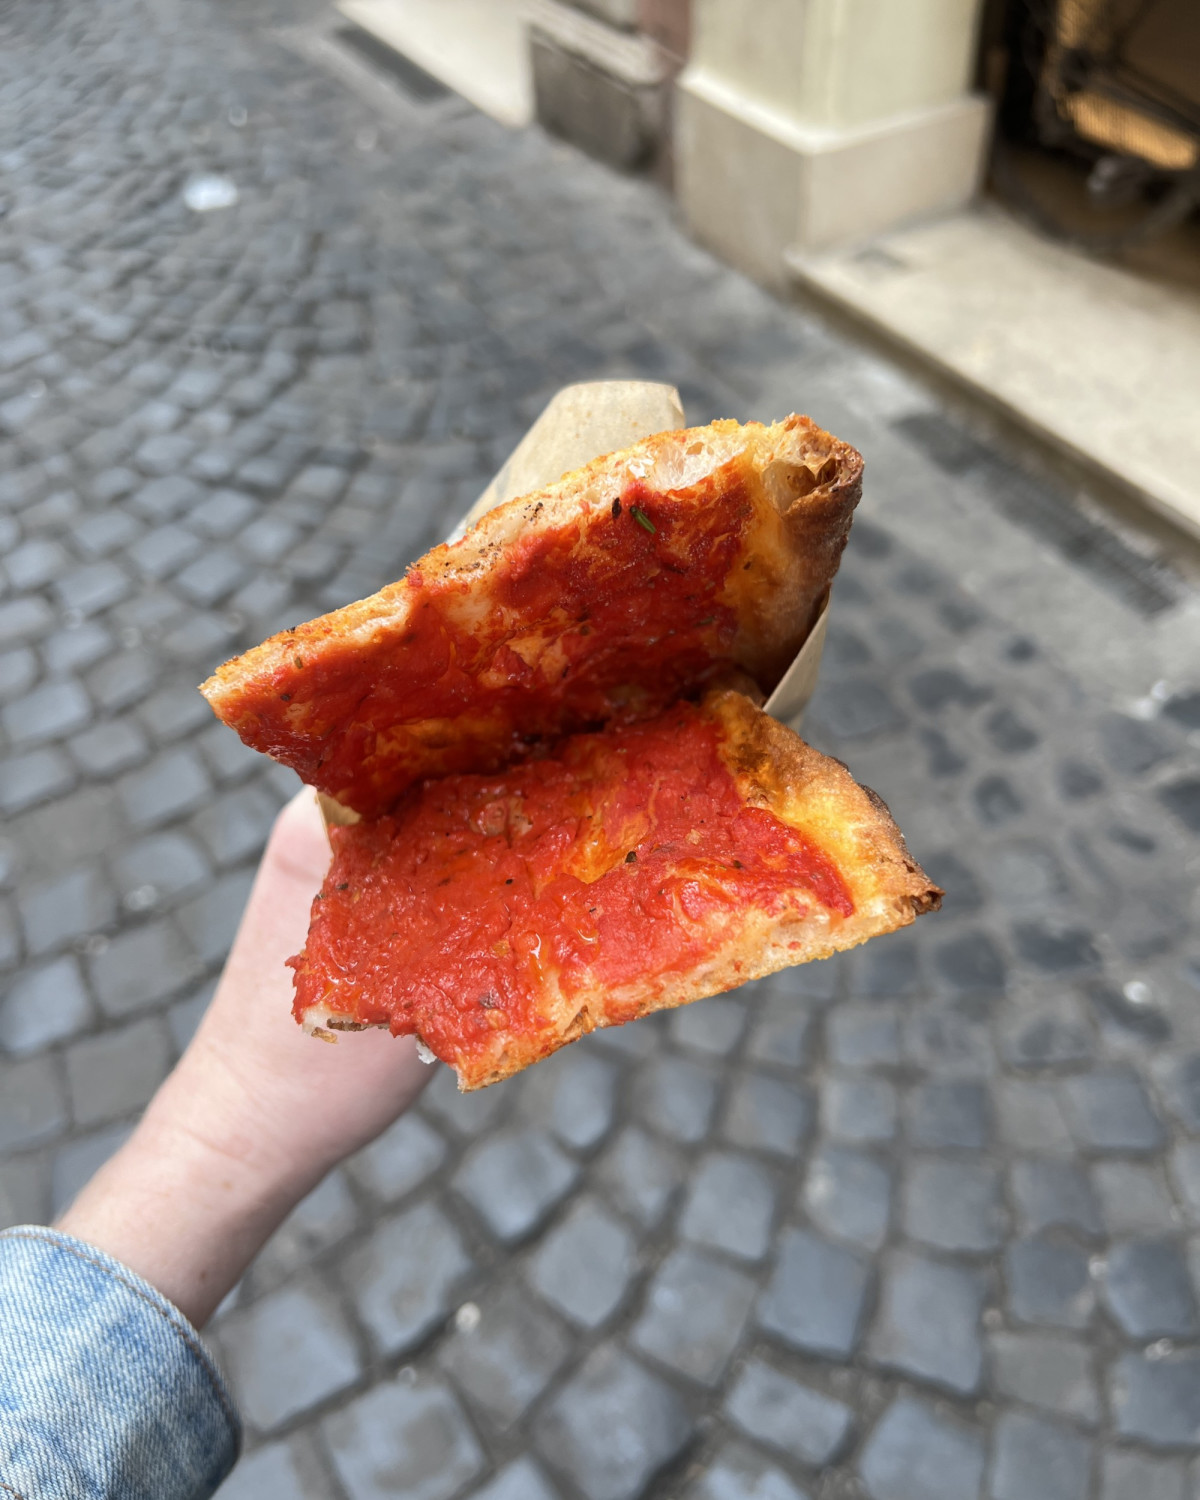 Red pizza at Antico Forno Roscioli
